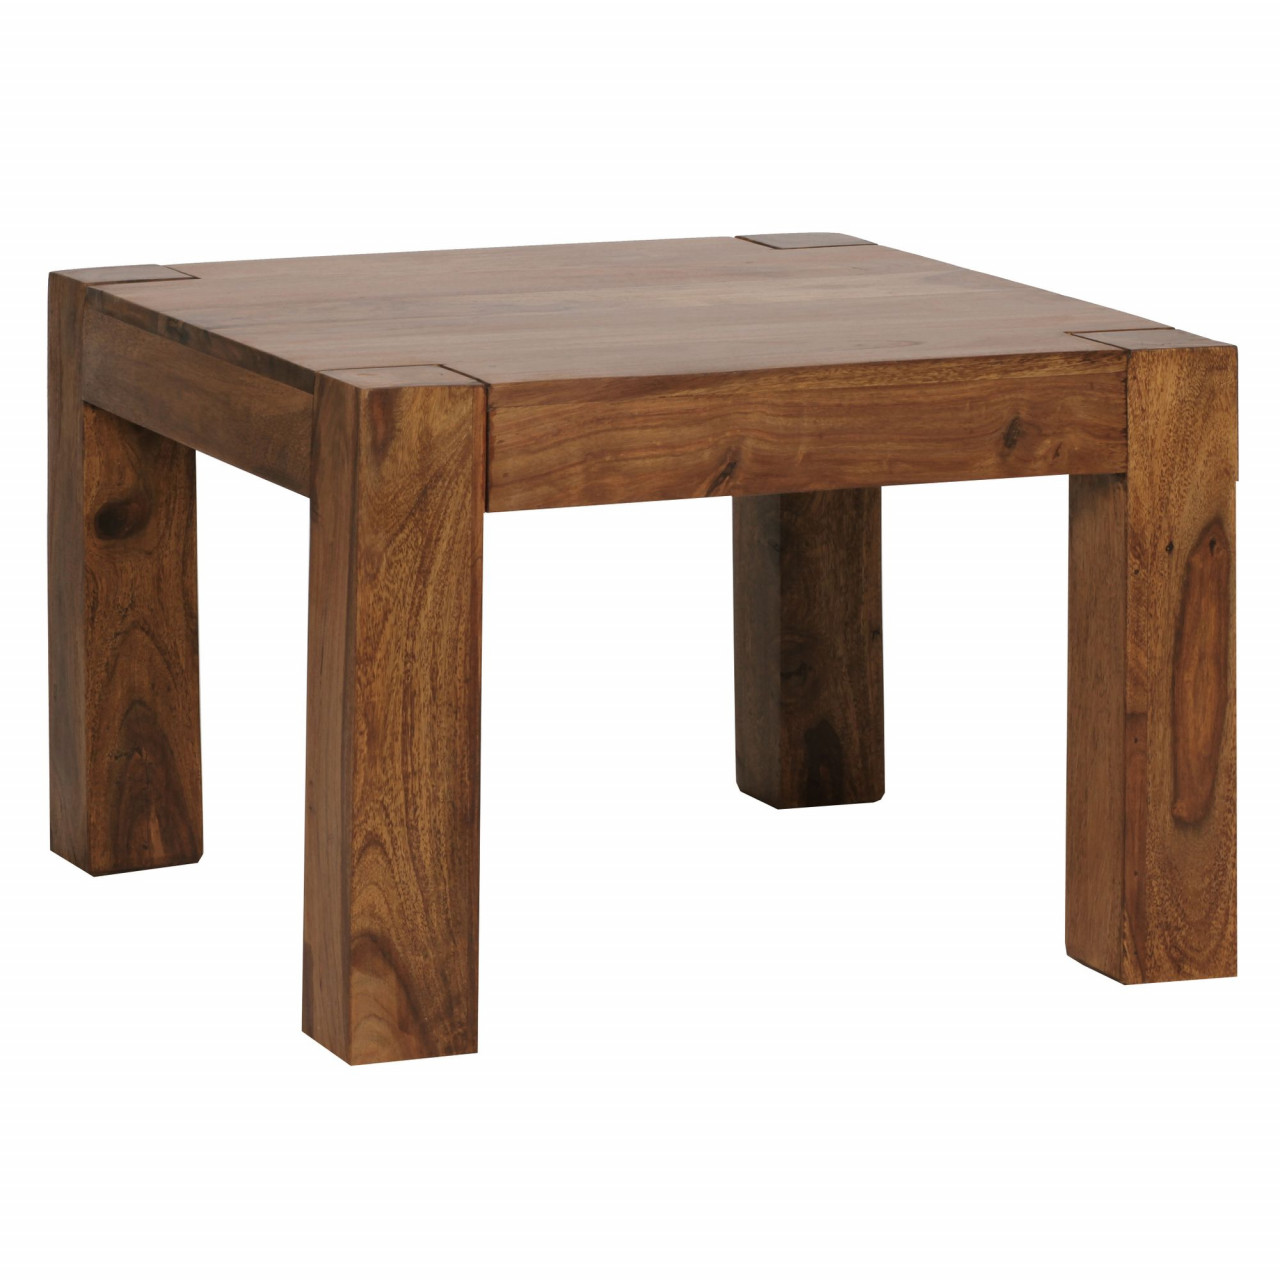 Couchtisch Massiv-Holz Sheesham 60 cm breit Wohnzimmer-Tisch Design dunkel-braun Landhaus-Stil Beistelltisch von Wohnling